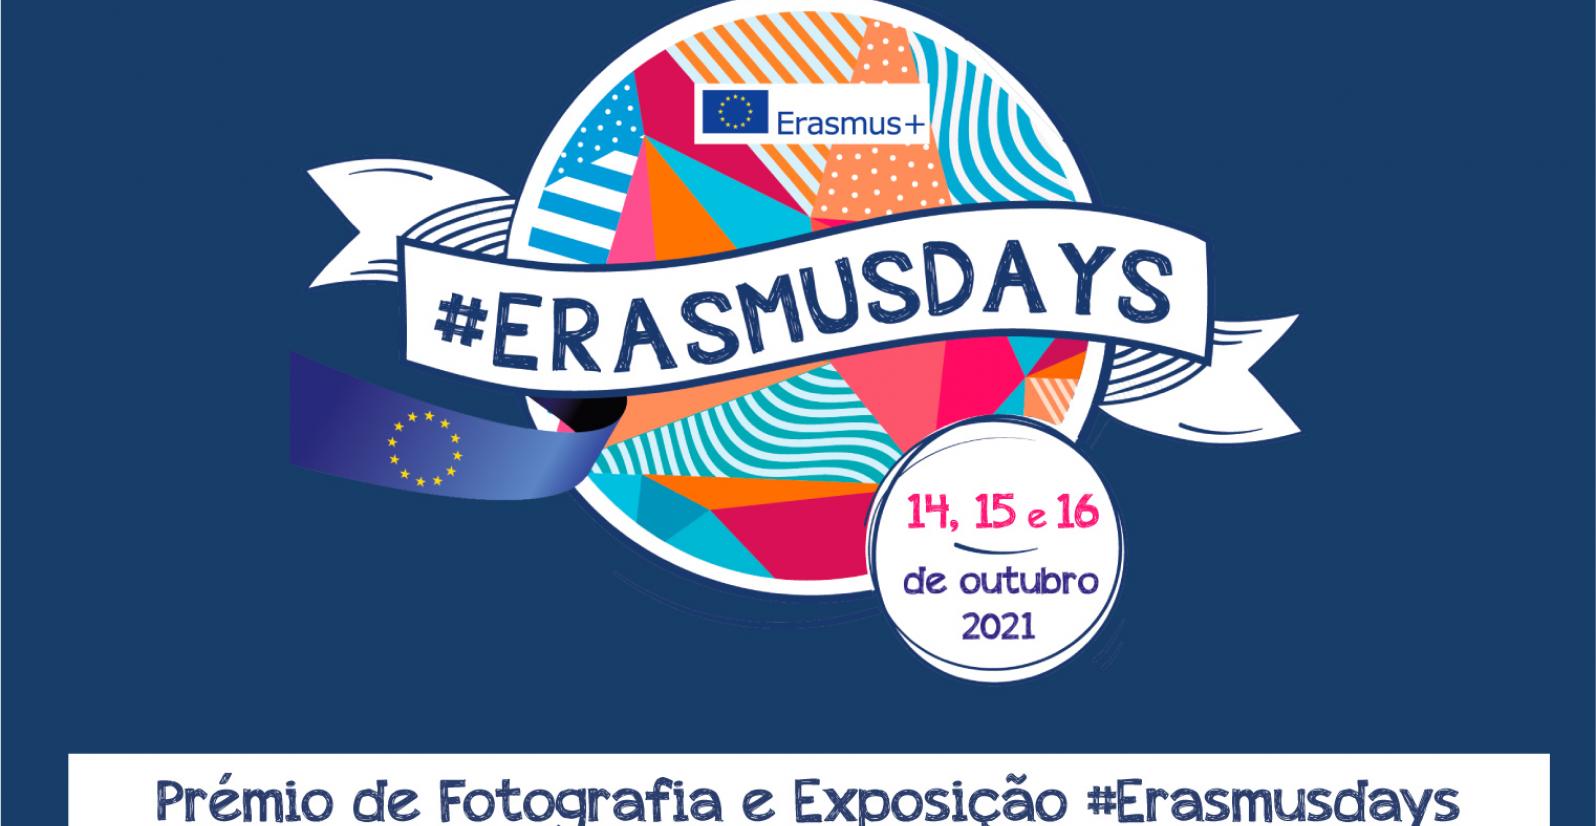 Imagem com o logotipo "ErasmusDays" onde é possível ver vários padrões coloridos e uma bandeira da Europa. Frase: Prémio de fotografia e exposição erasmusdays